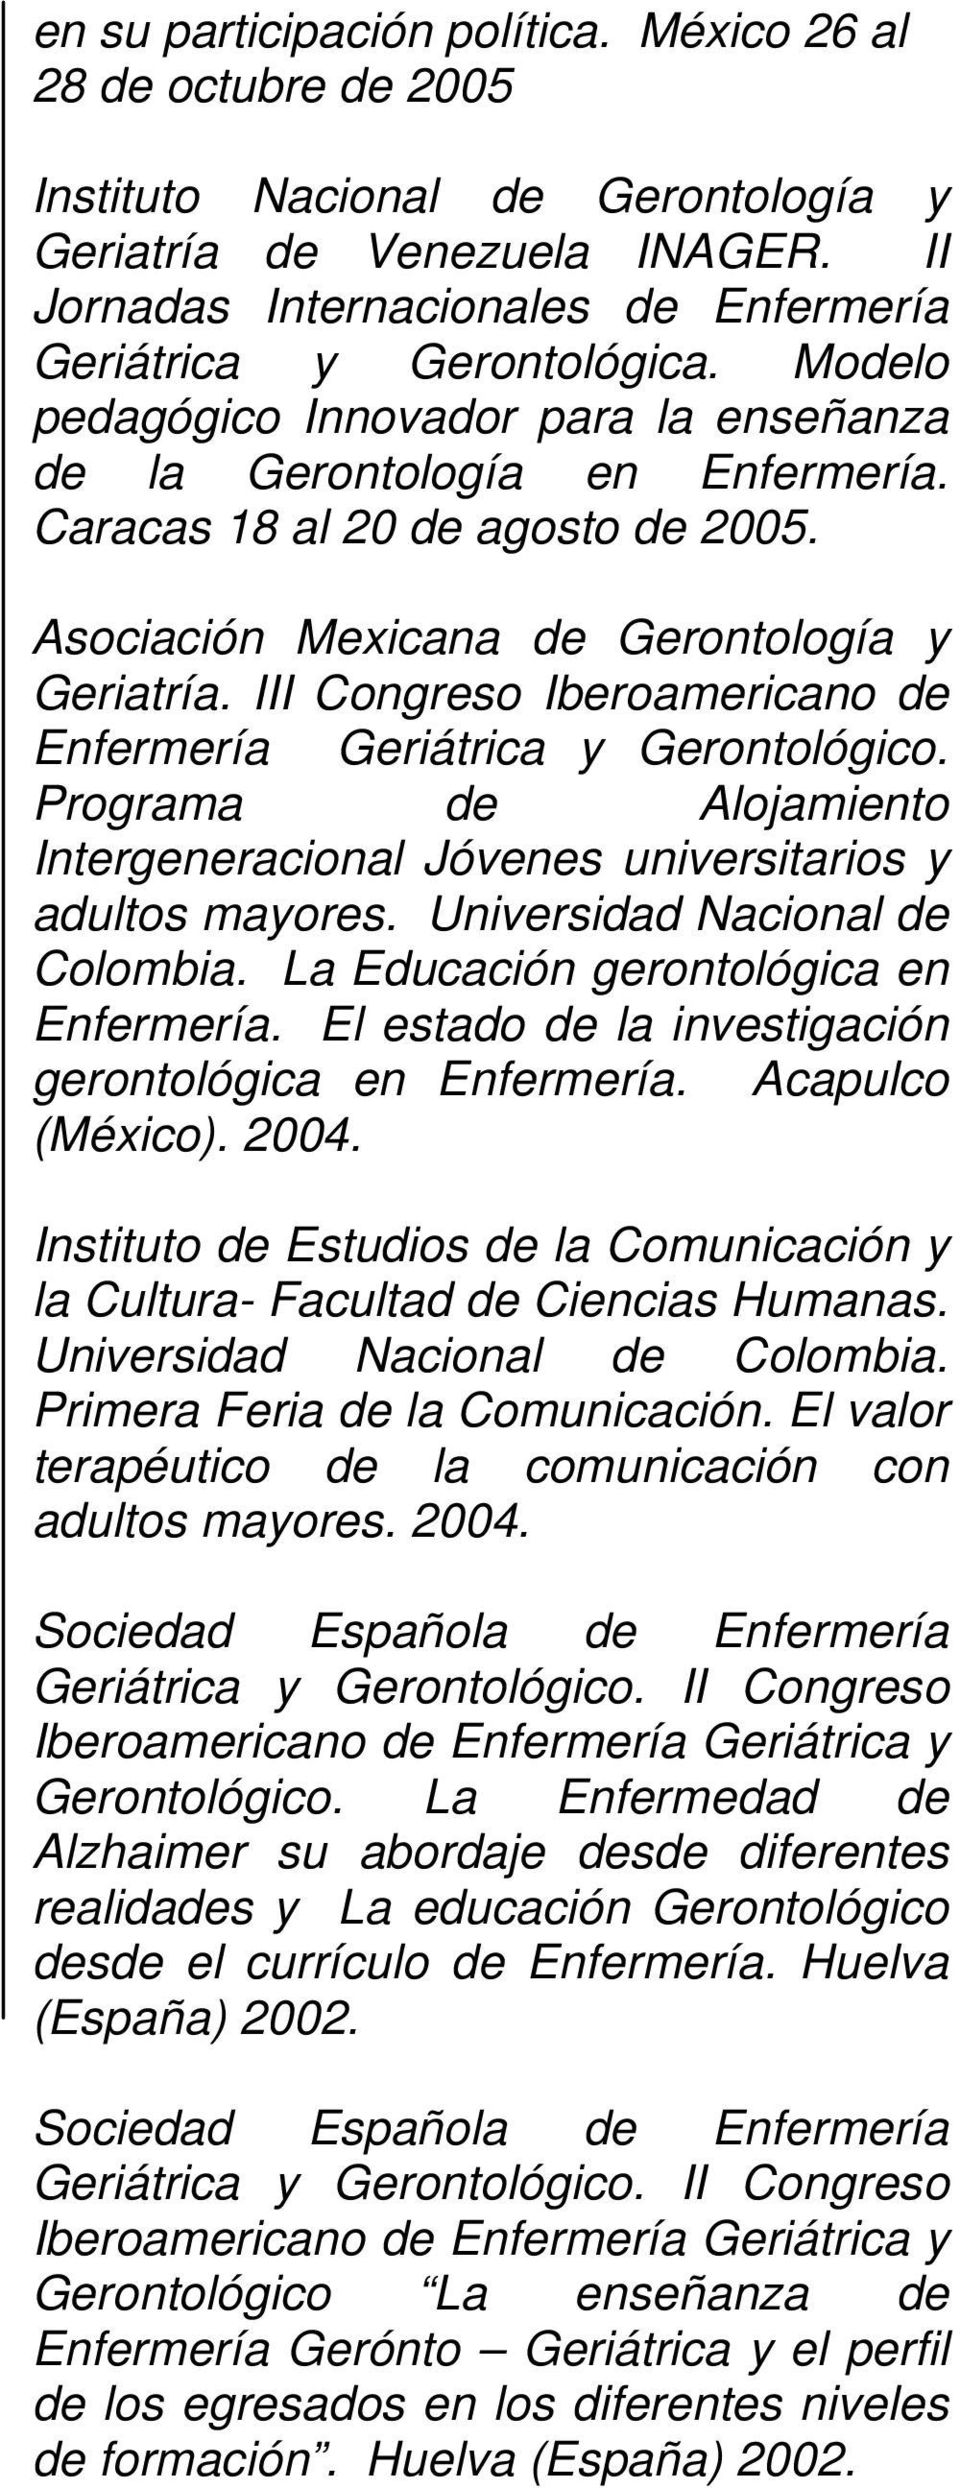 Asociación Mexicana de Gerontología y Geriatría. III Congreso Iberoamericano de Enfermería Geriátrica y Gerontológico.